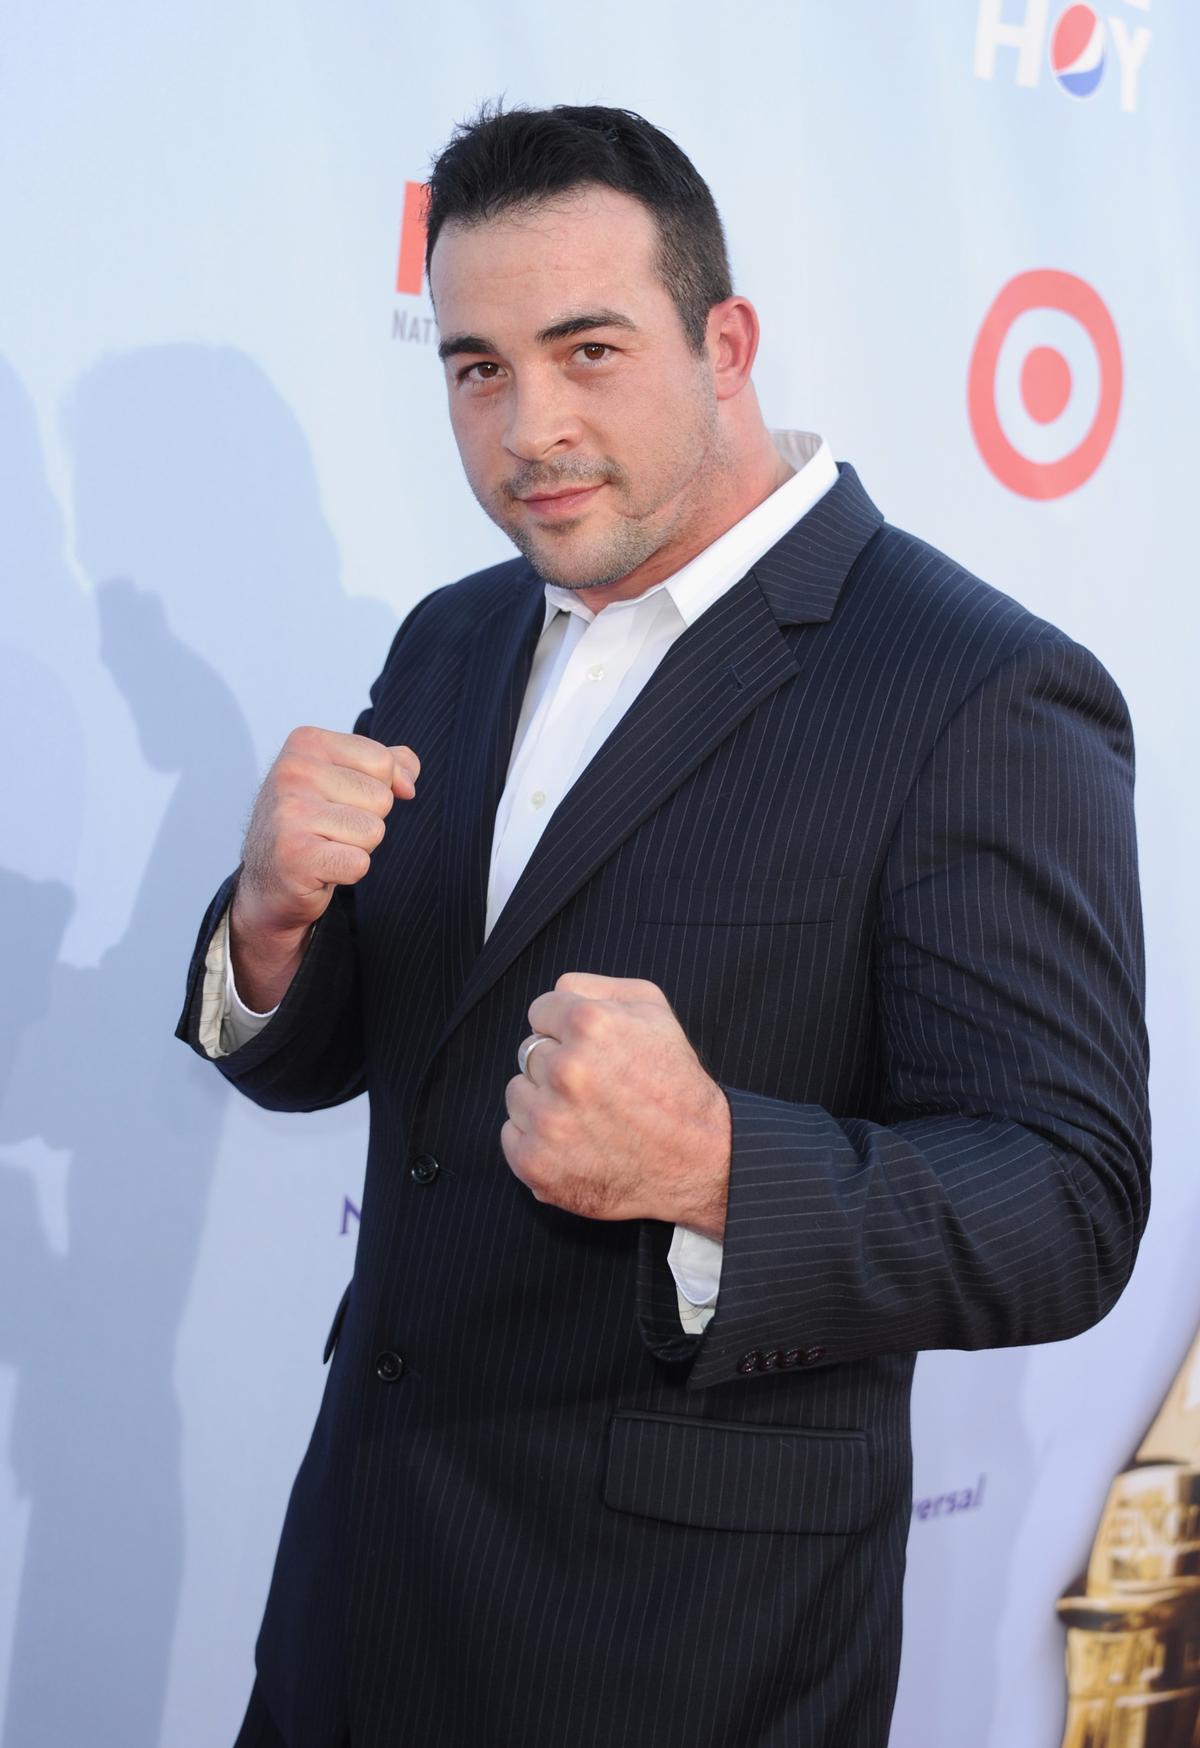 David "Nino" Rodriguez at the 2012 NCLR ALMA Awards at Pasadena Civic Auditorium. (Kevin Winter/Getty Images)